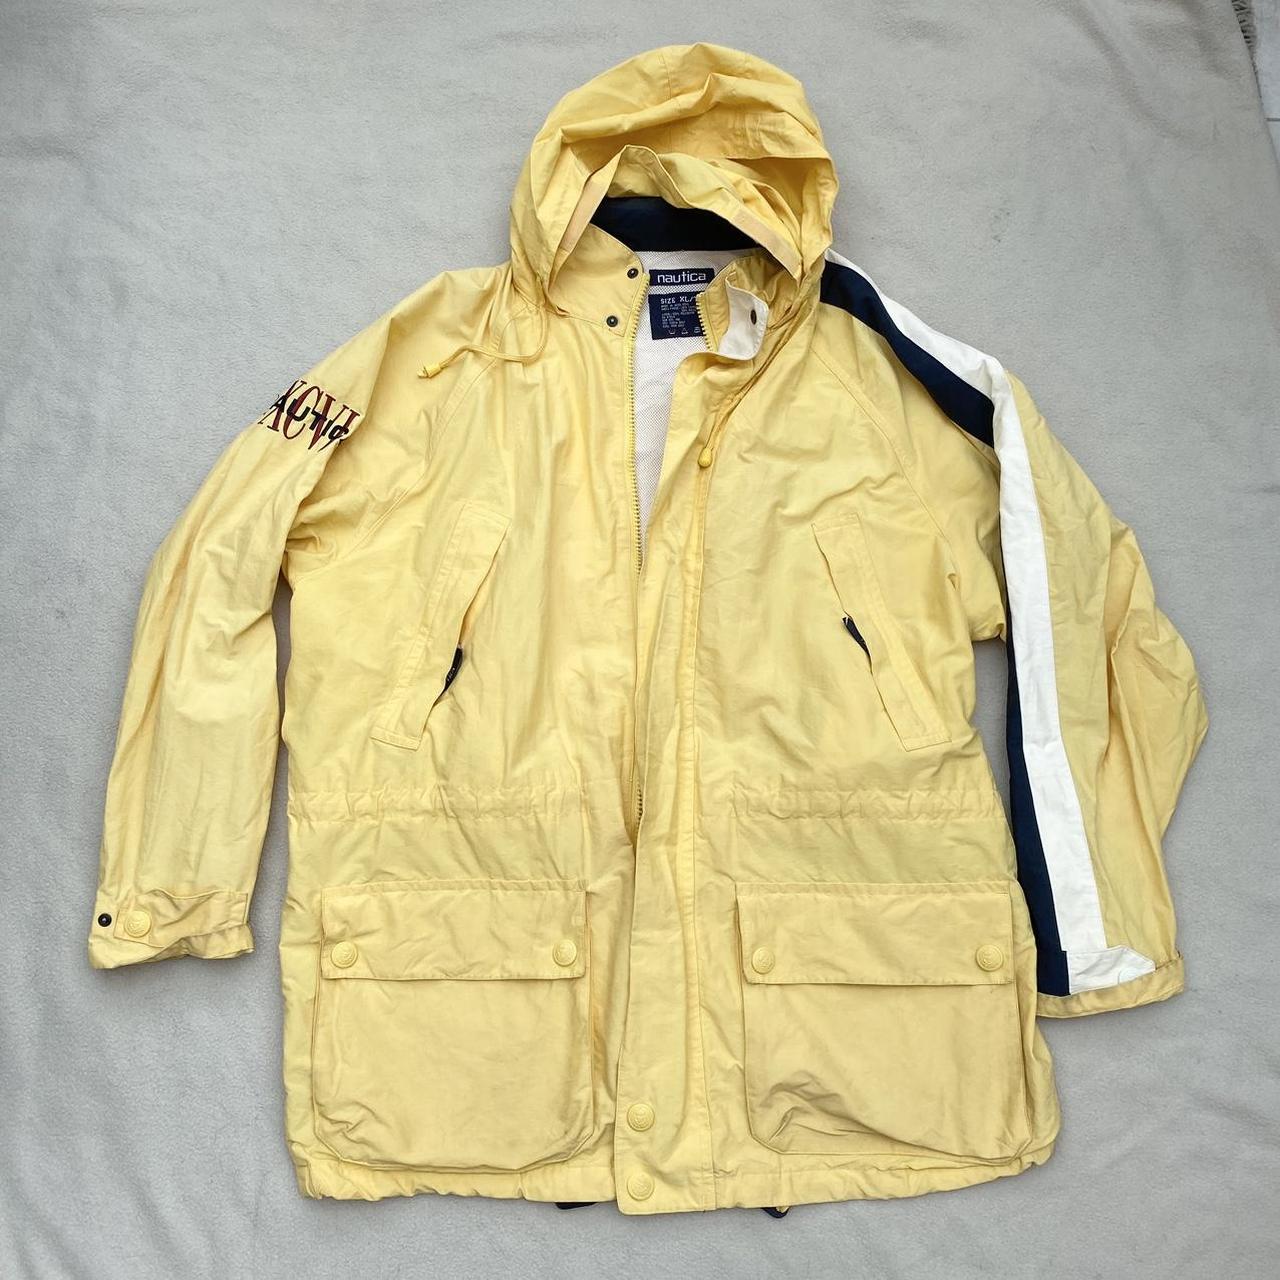 vintage yellow nautica jacket / coat retractable... - Depop